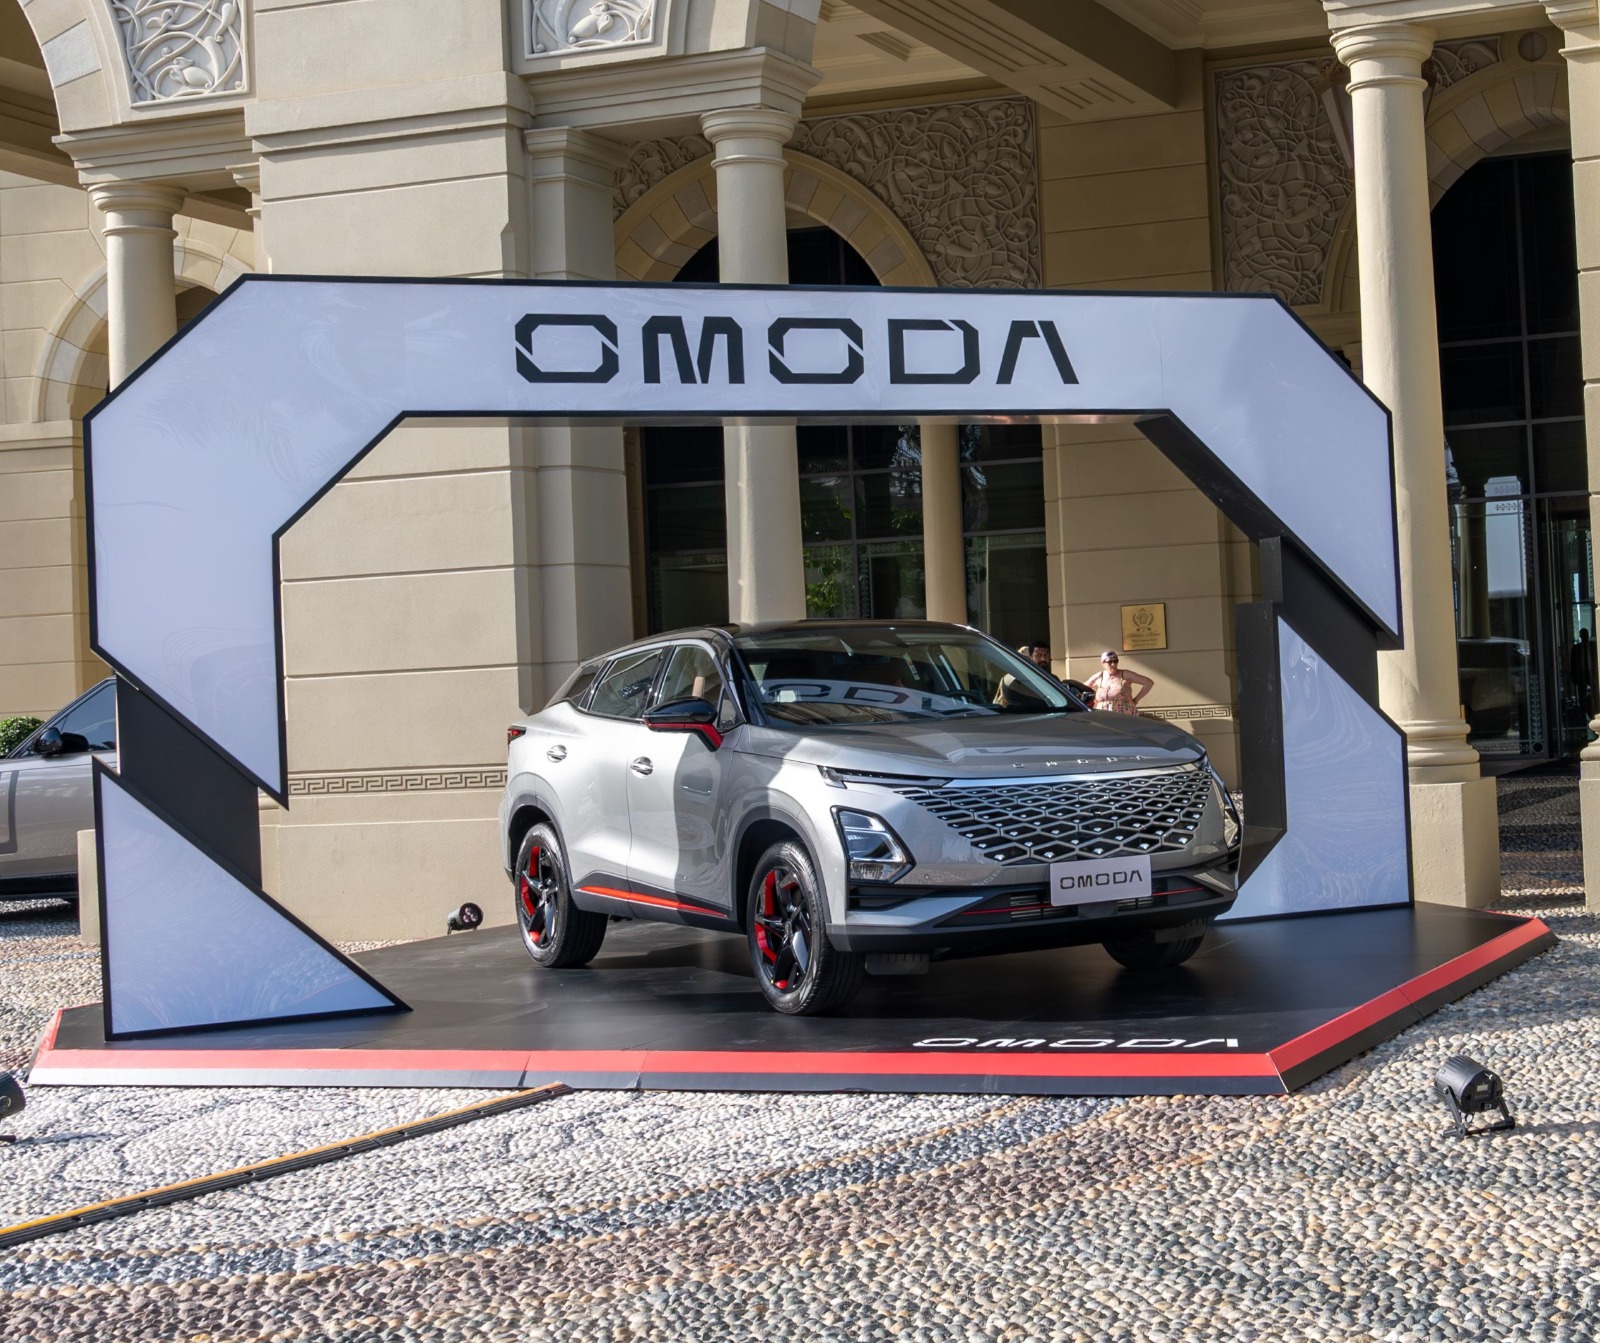 سيارة OMODA C5 الجديدة تستقطب عشاق السيارات في الحدث الحصري لأول مرة في دبي